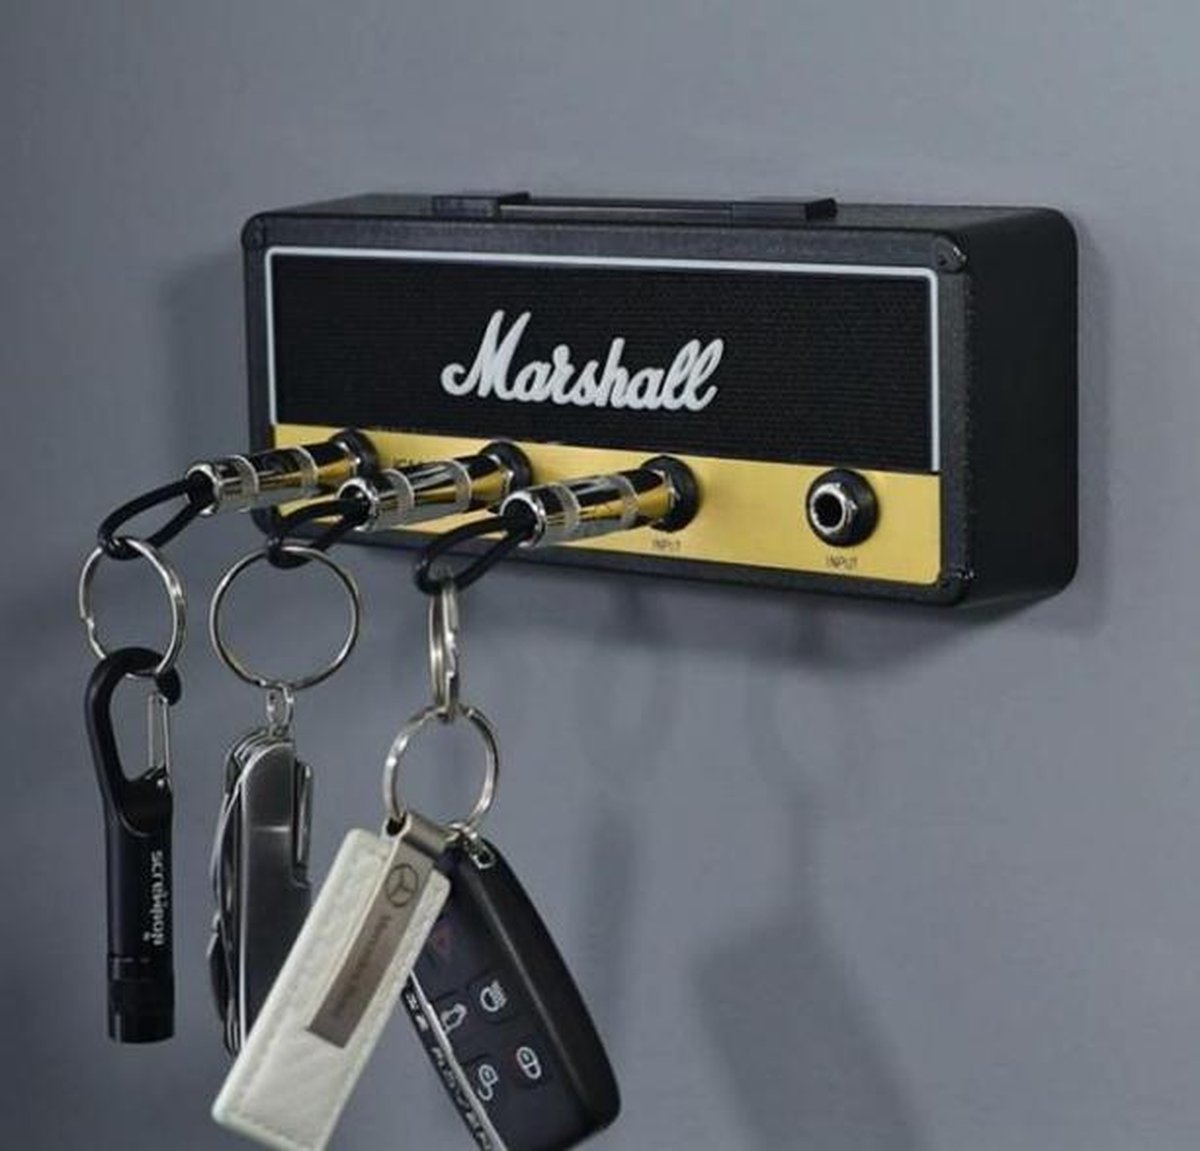 Marshall Porte-clés mural pour clavier, boîte à clés JCM800 Porte